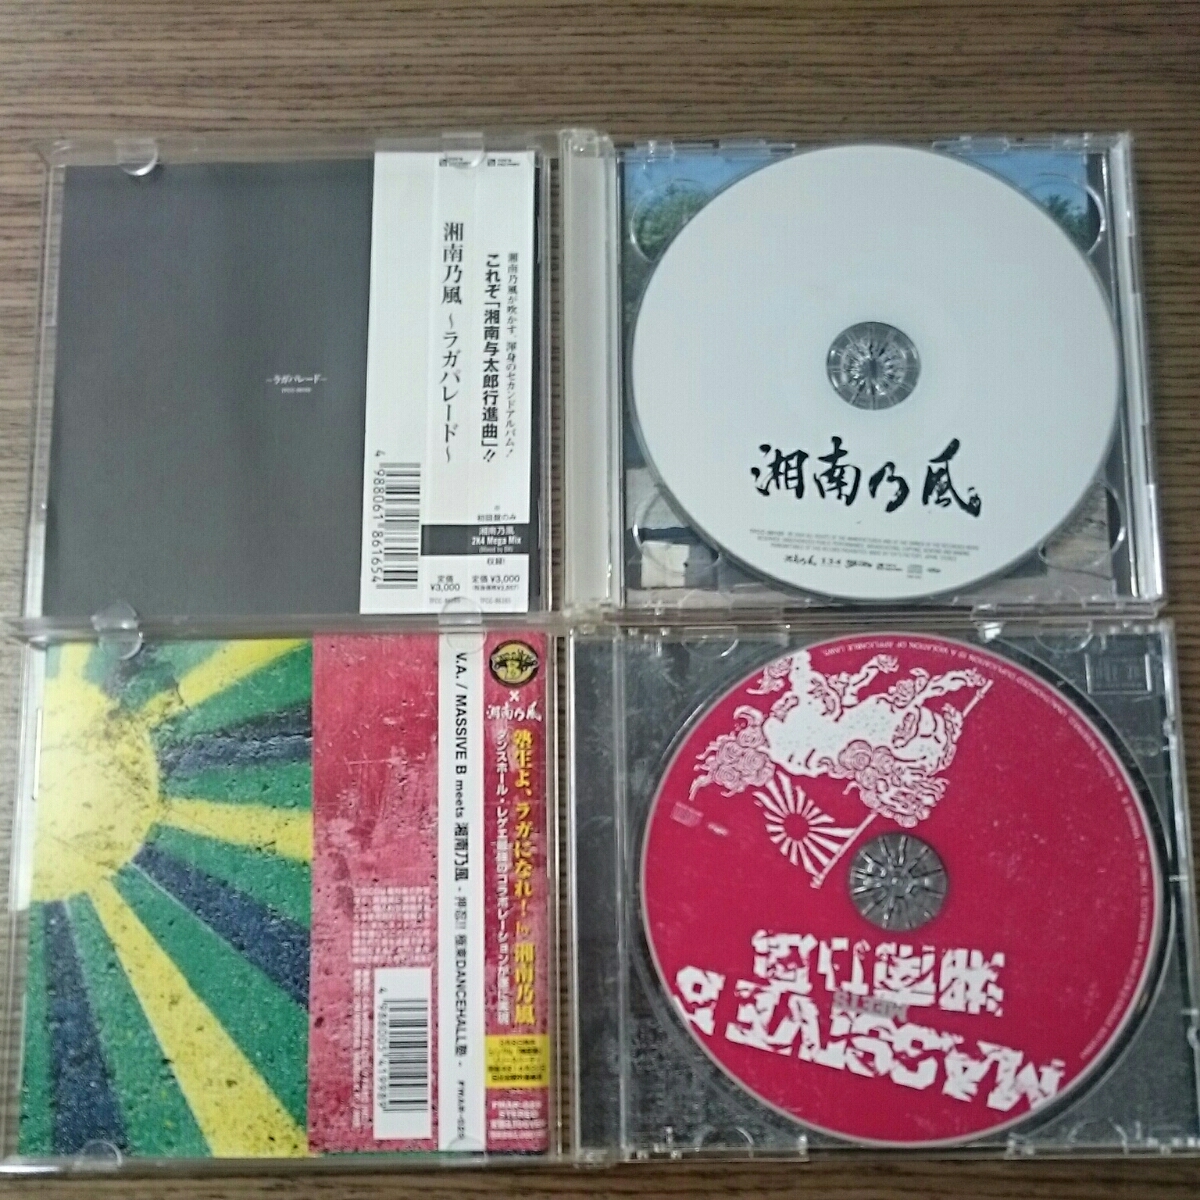 【格安saleスタート】 レゲエカセット dvd 邦楽